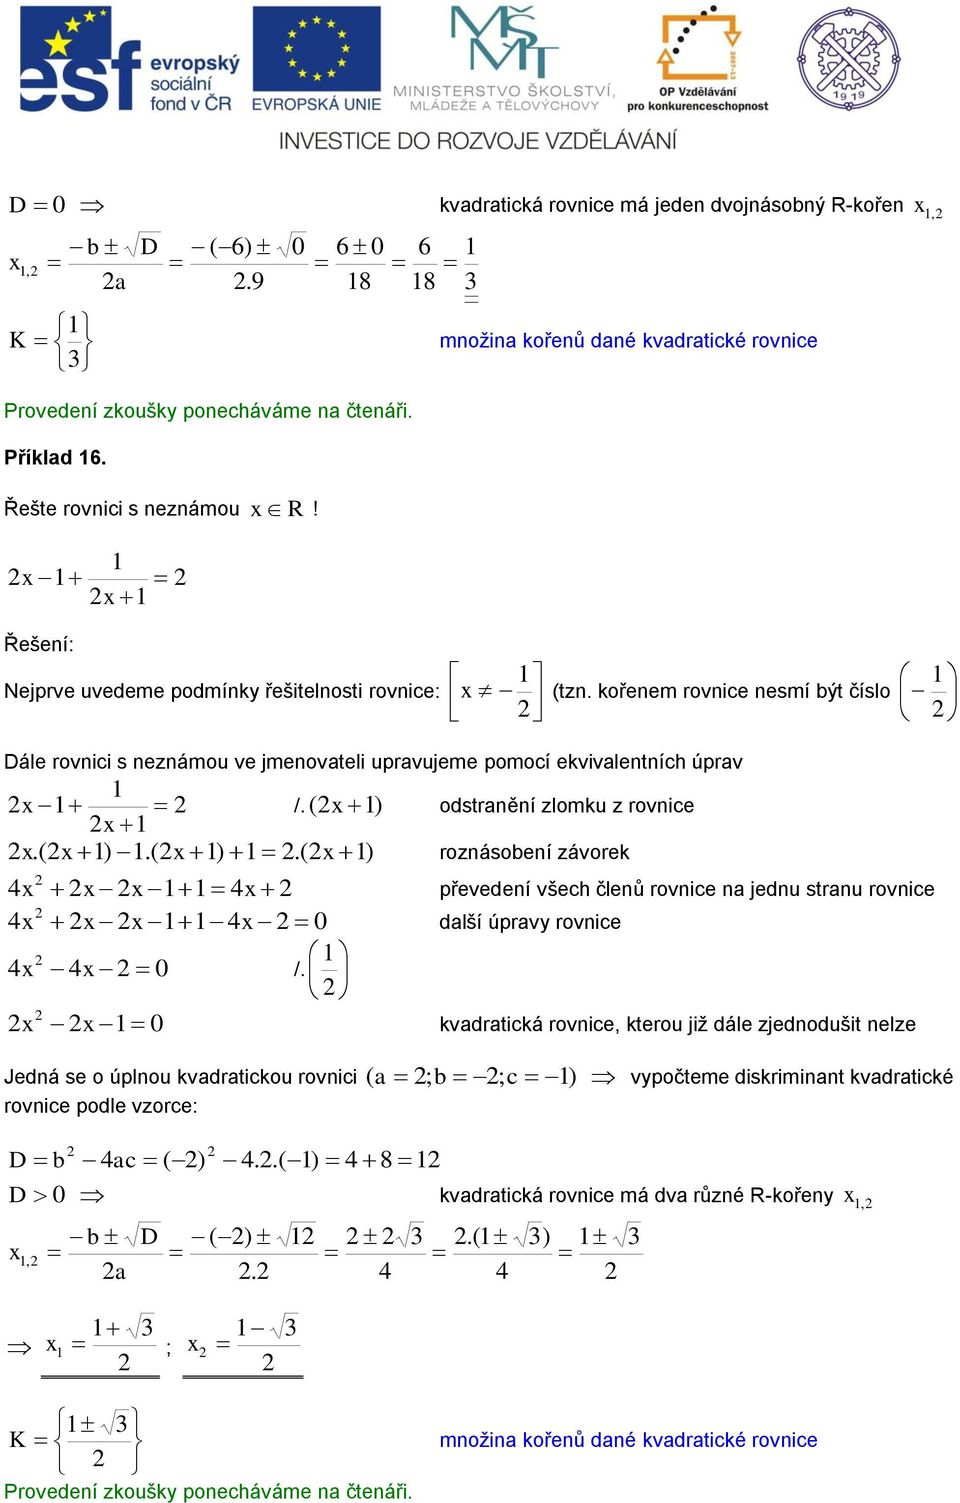 ( ) odstranění zlomku z rovnice.( ).( ).( ) roznásobení závorek 4 4 převedení všech členů rovnice na jednu stranu rovnice 4 4 0 další úpravy rovnice 4 4 0 /.